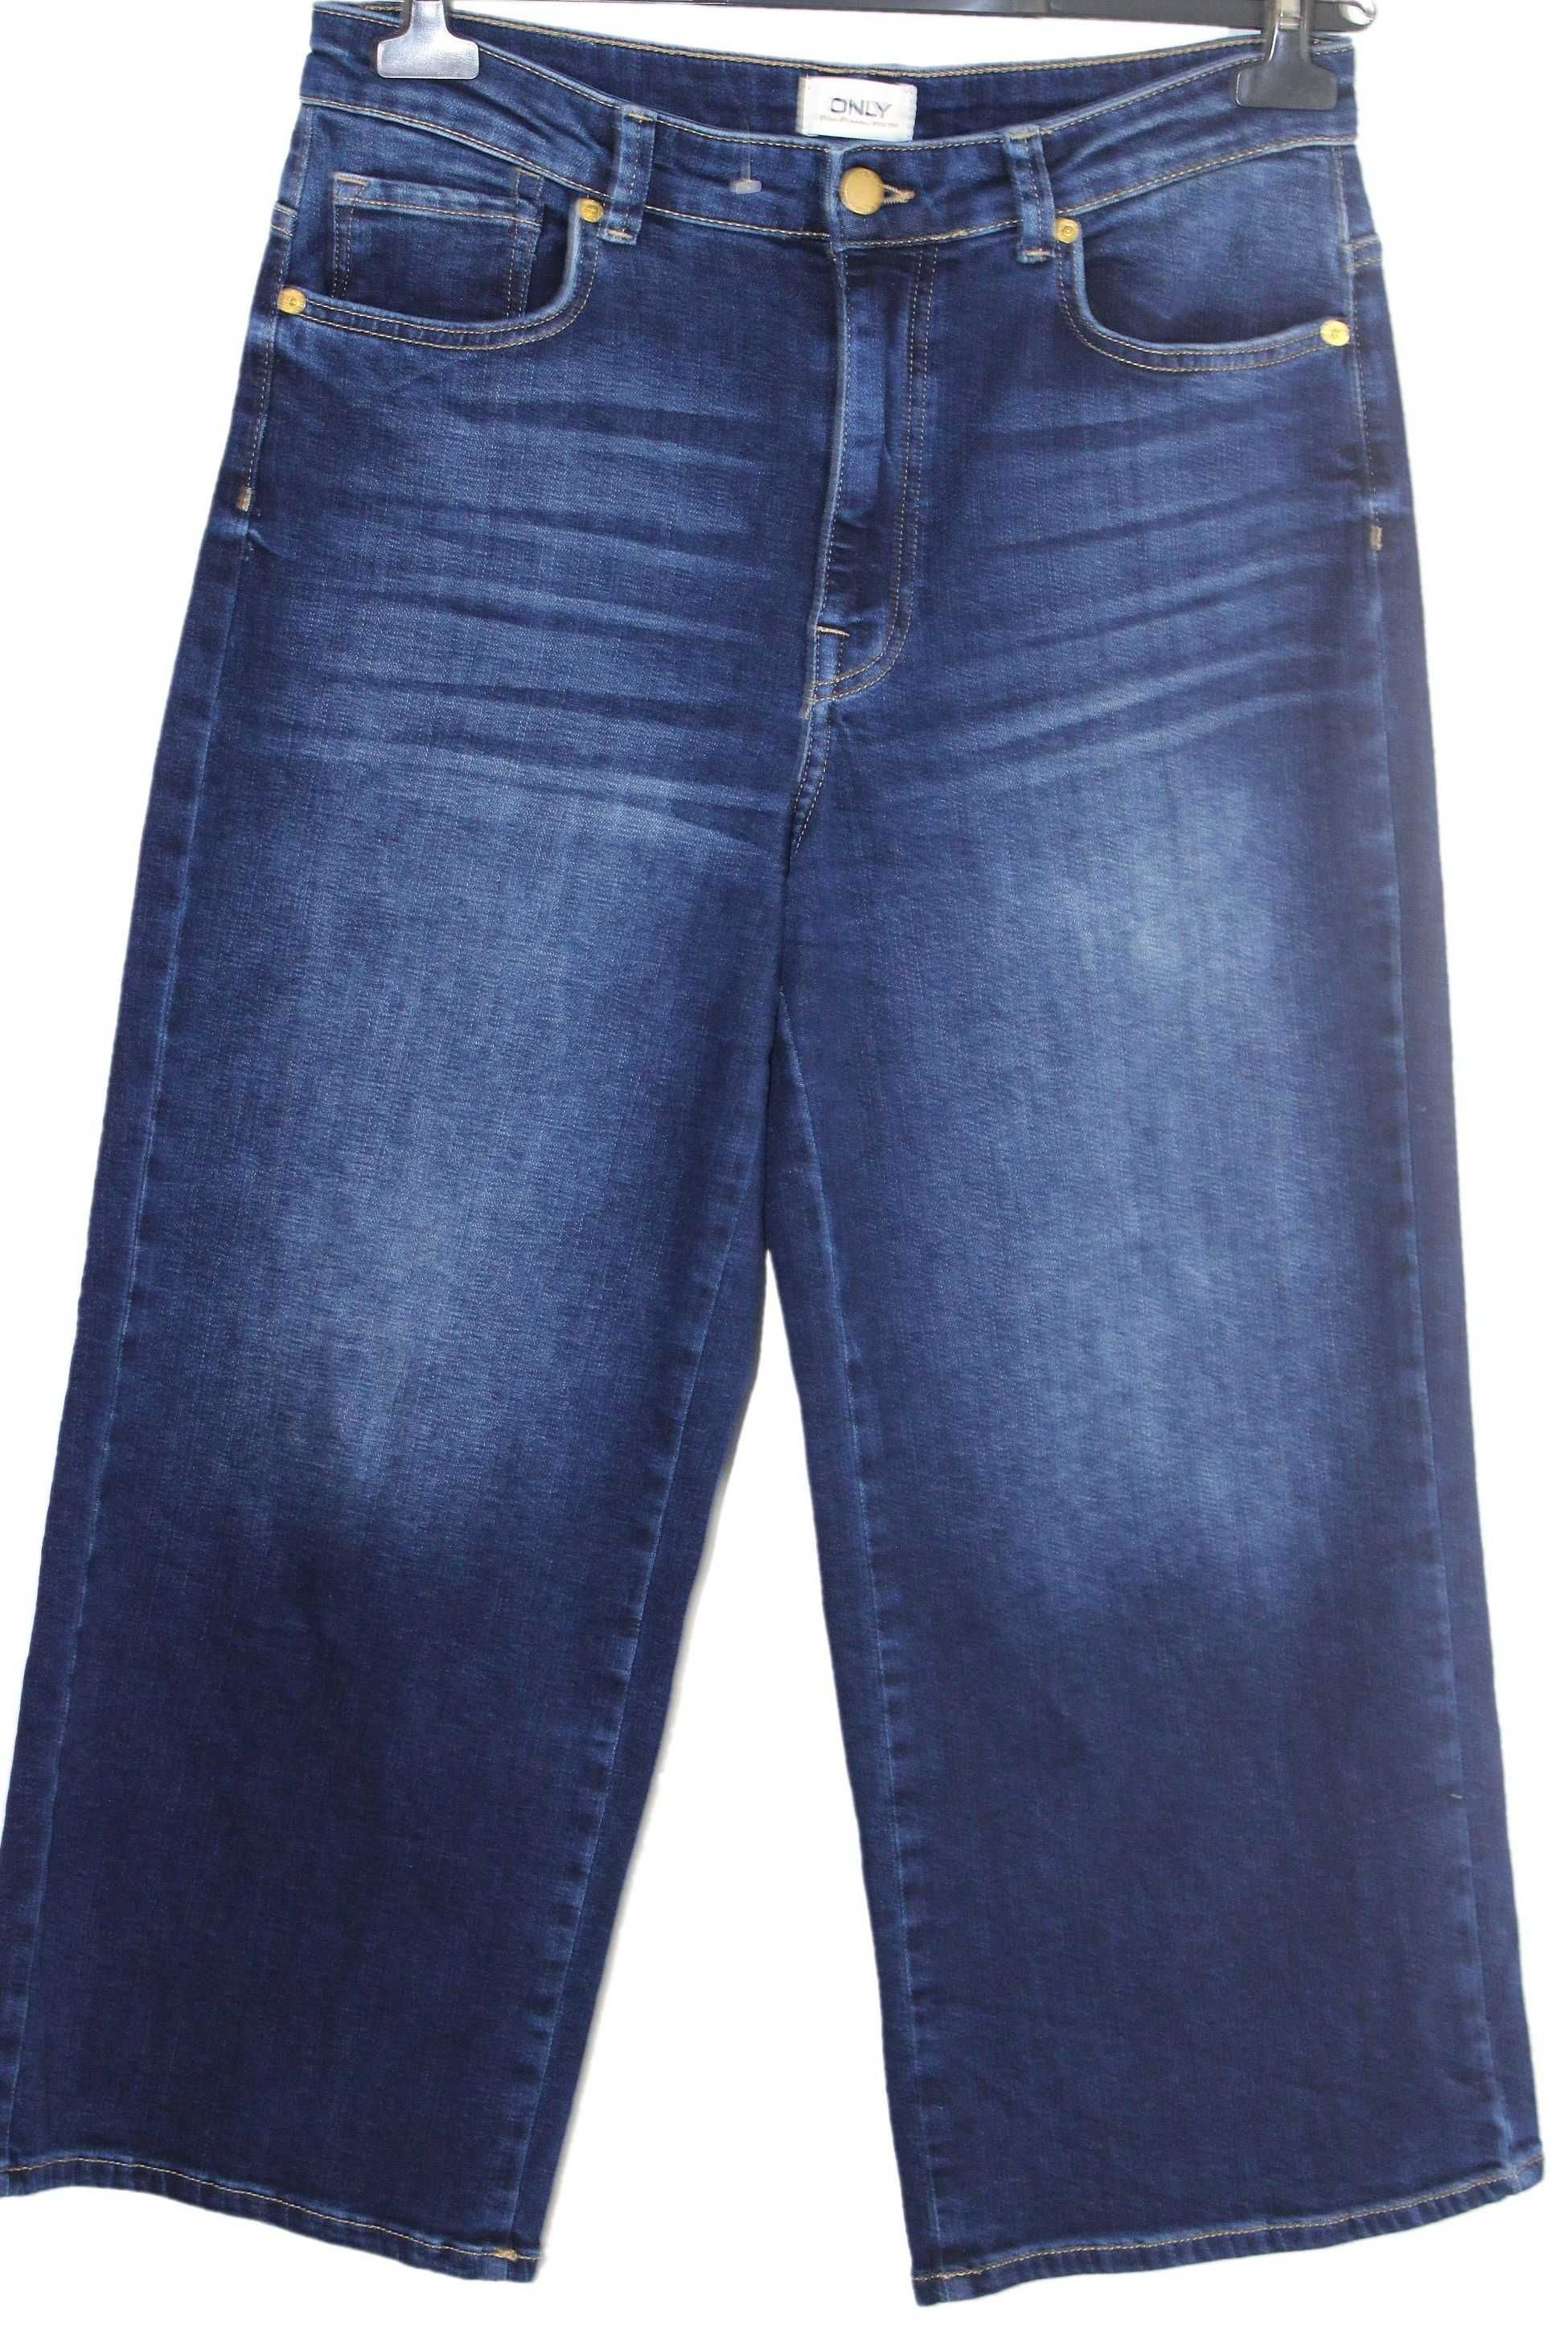 w5 ONLY Modne Damskie Spodnie Jeans Kuloty 42 XL